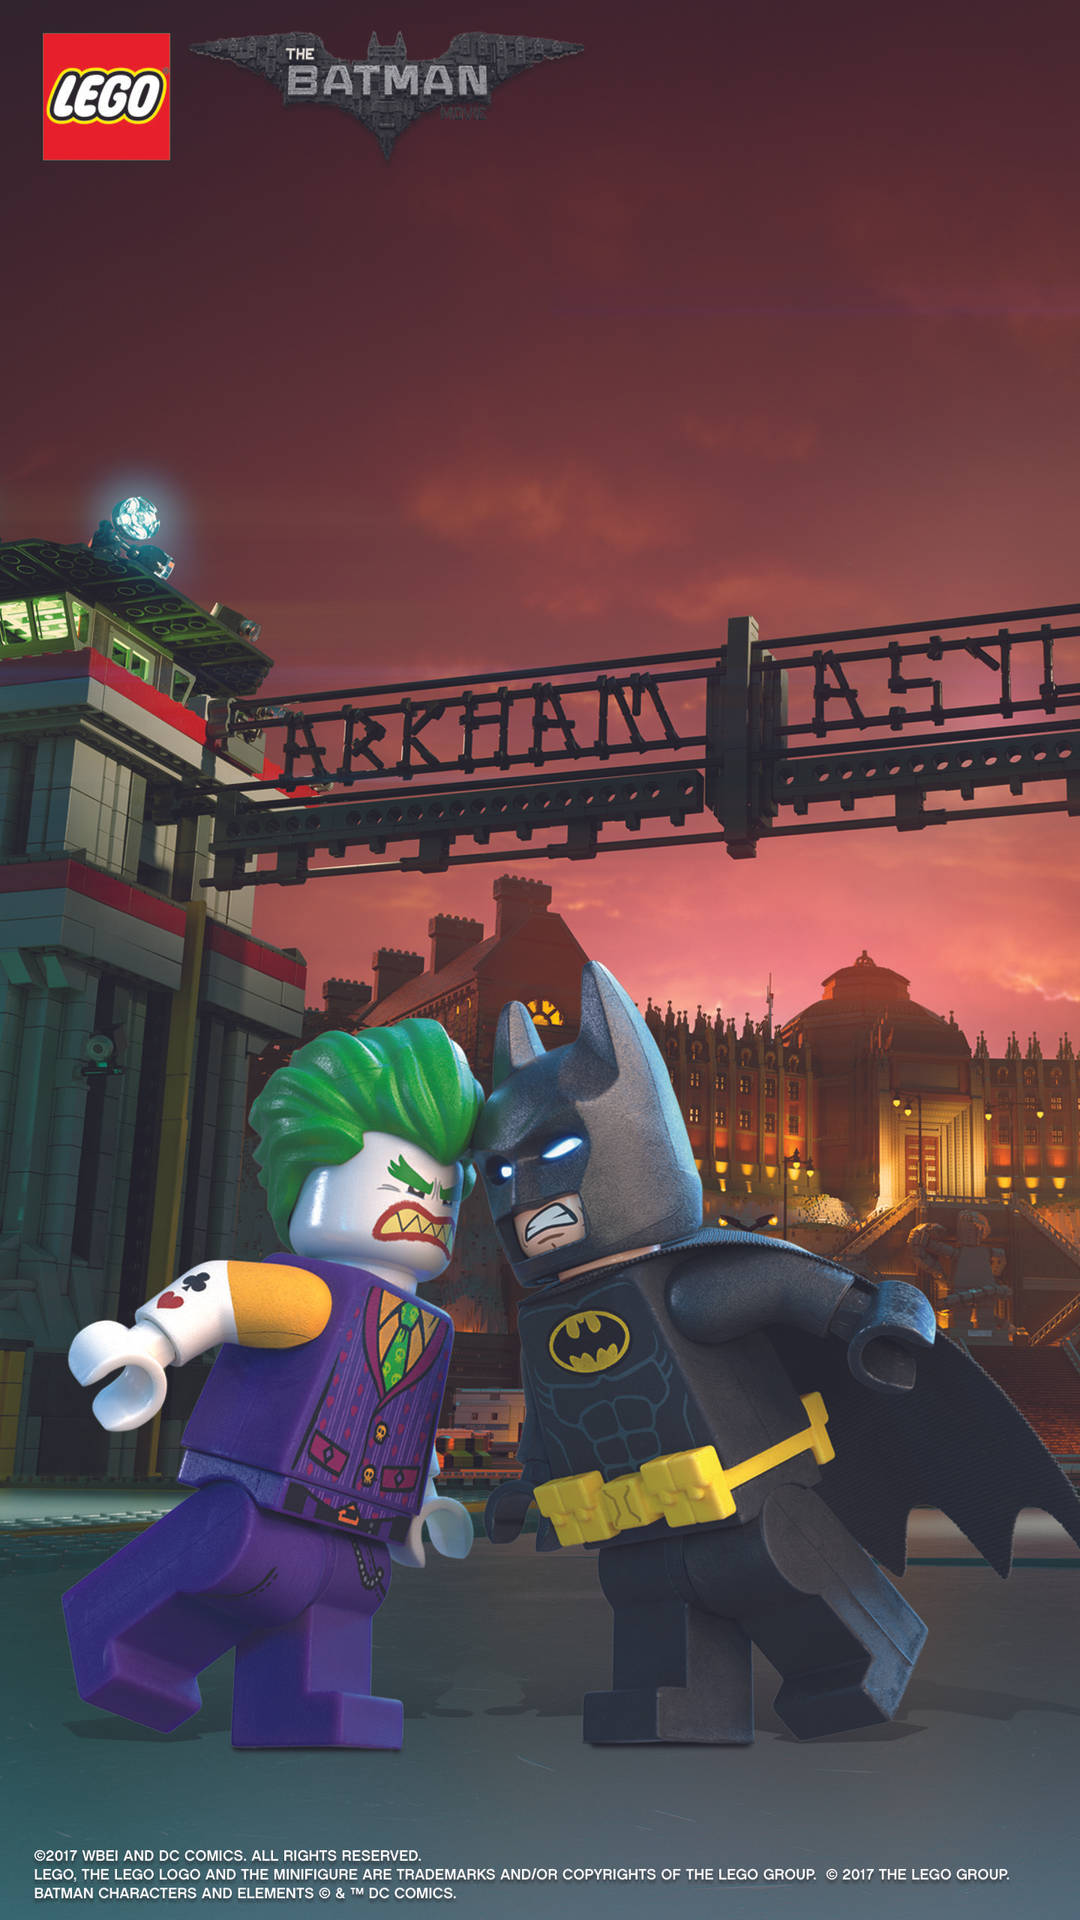 Jokerund Batman Stehen Sich Im Lego Batman Film Direkt Gegenüber. Wallpaper